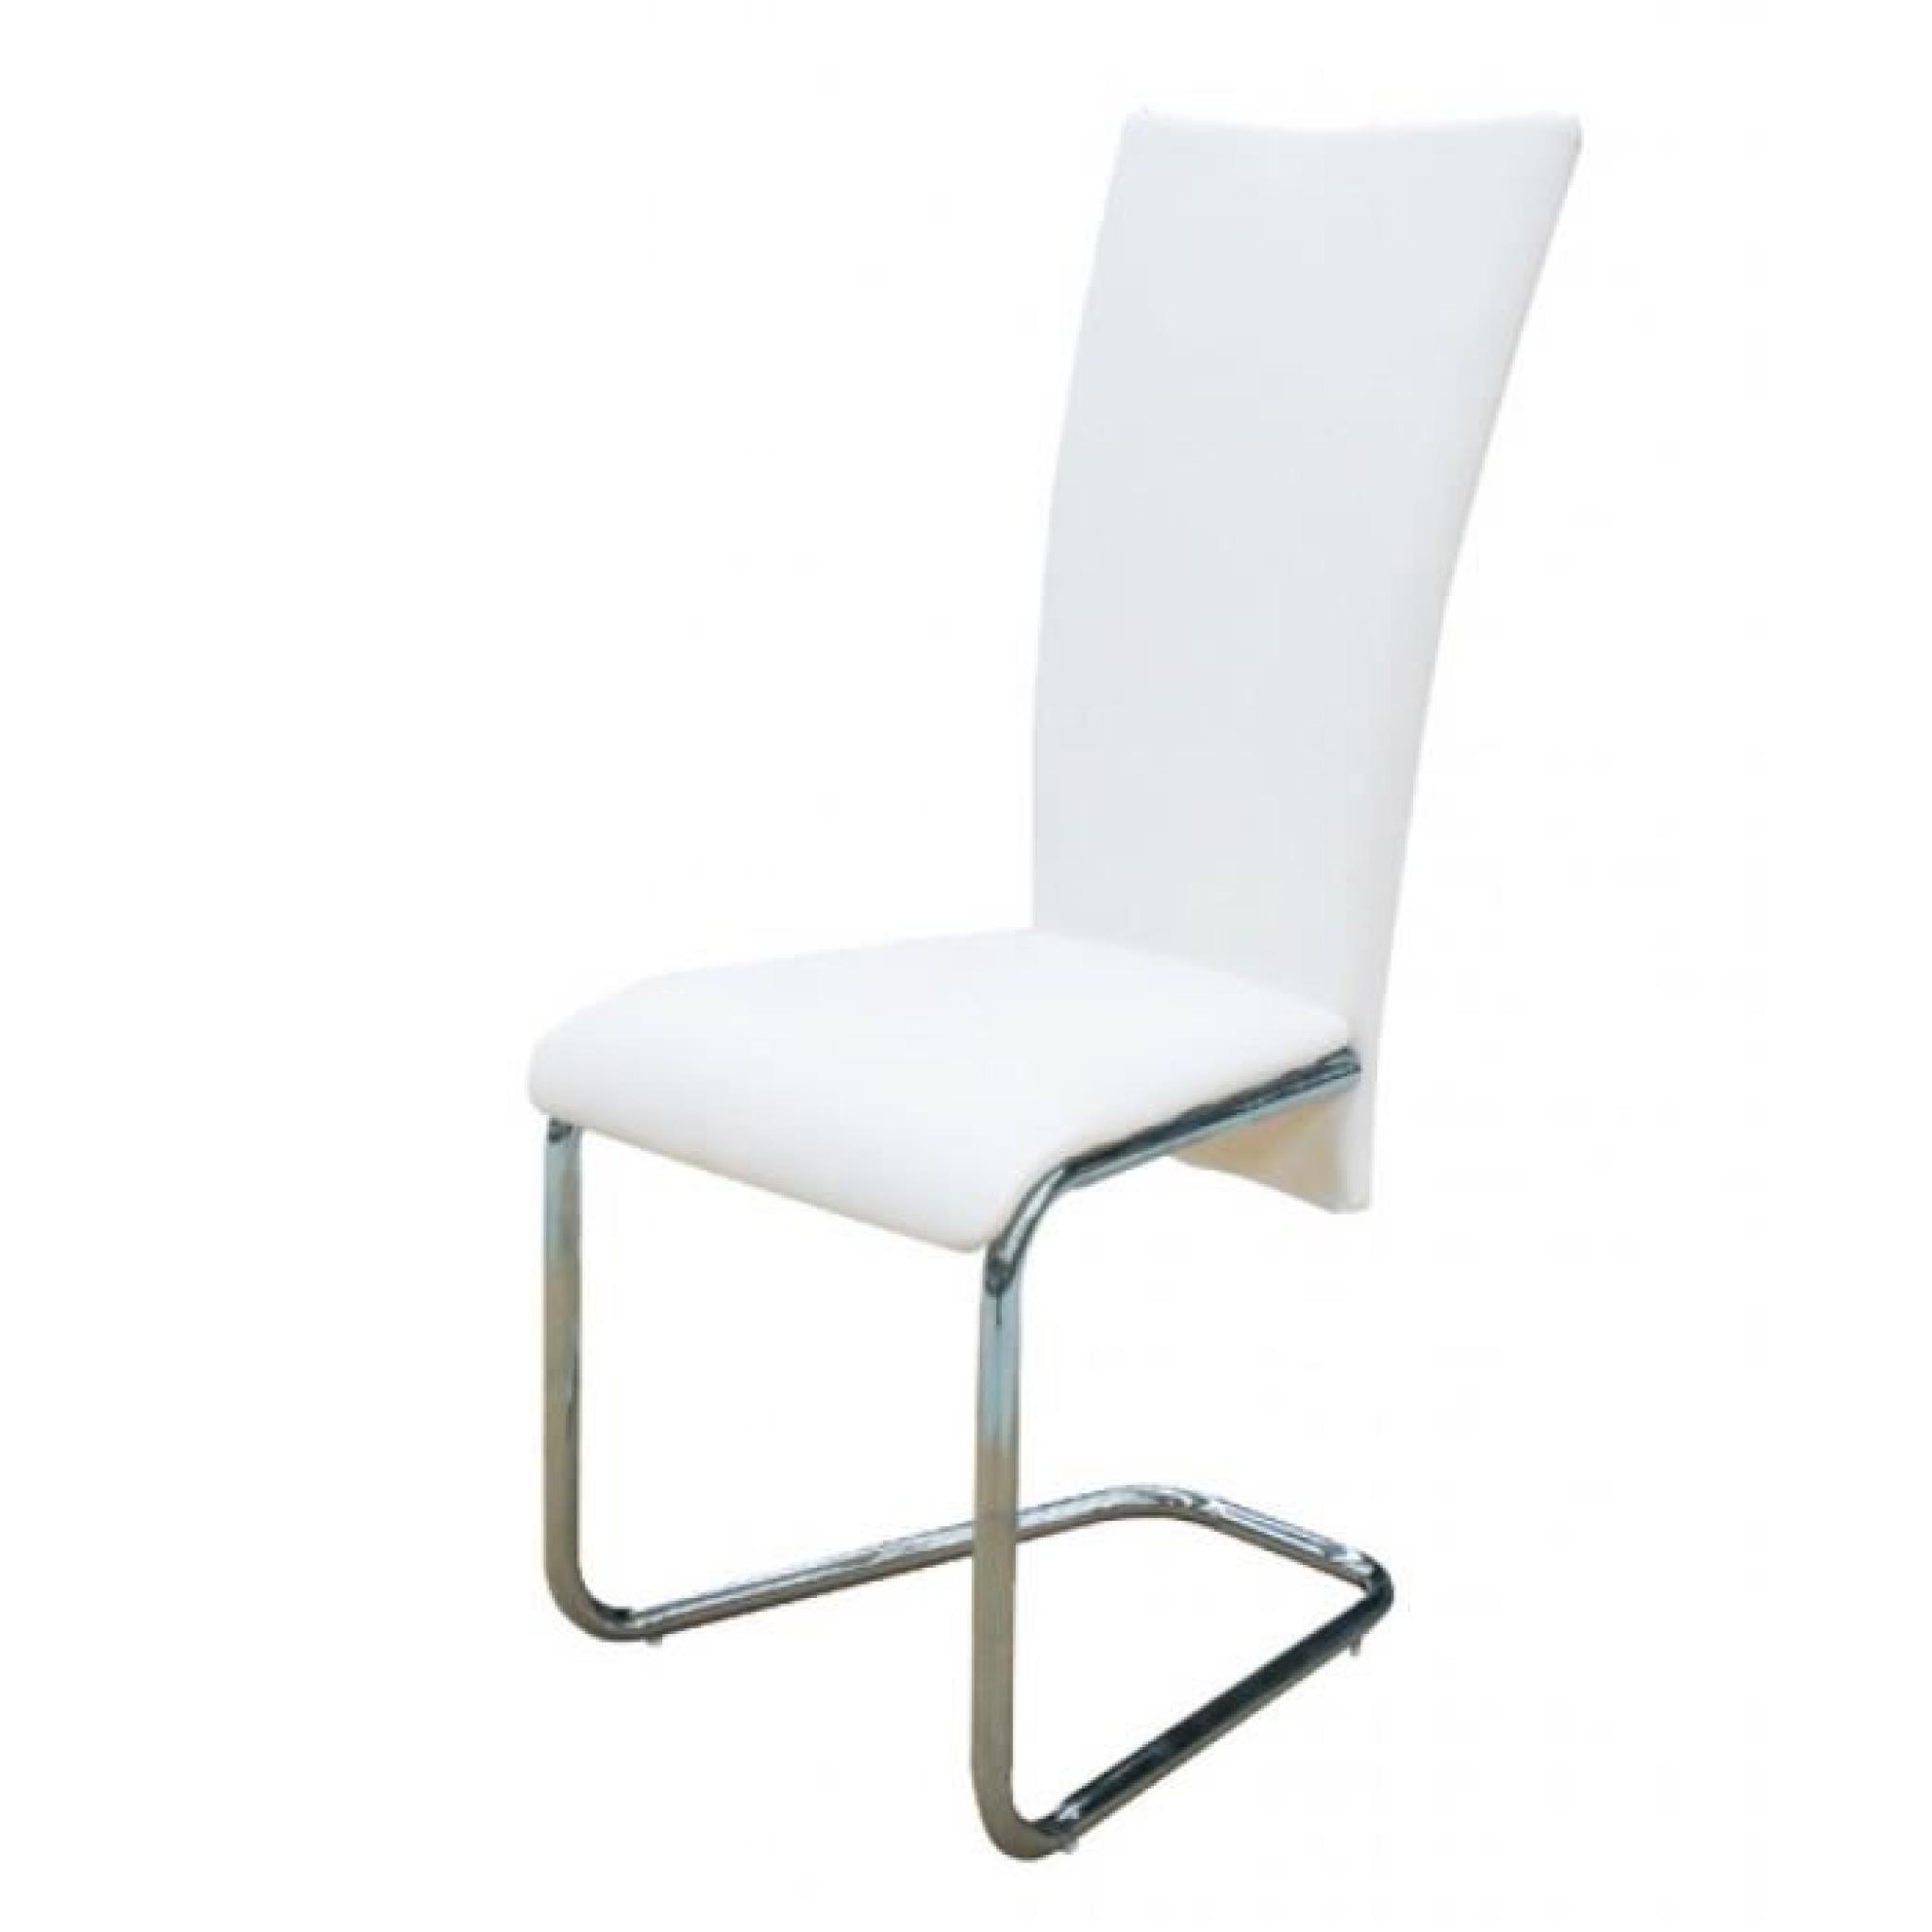 Magnifique Lot de 6 Chaise design metal blanche